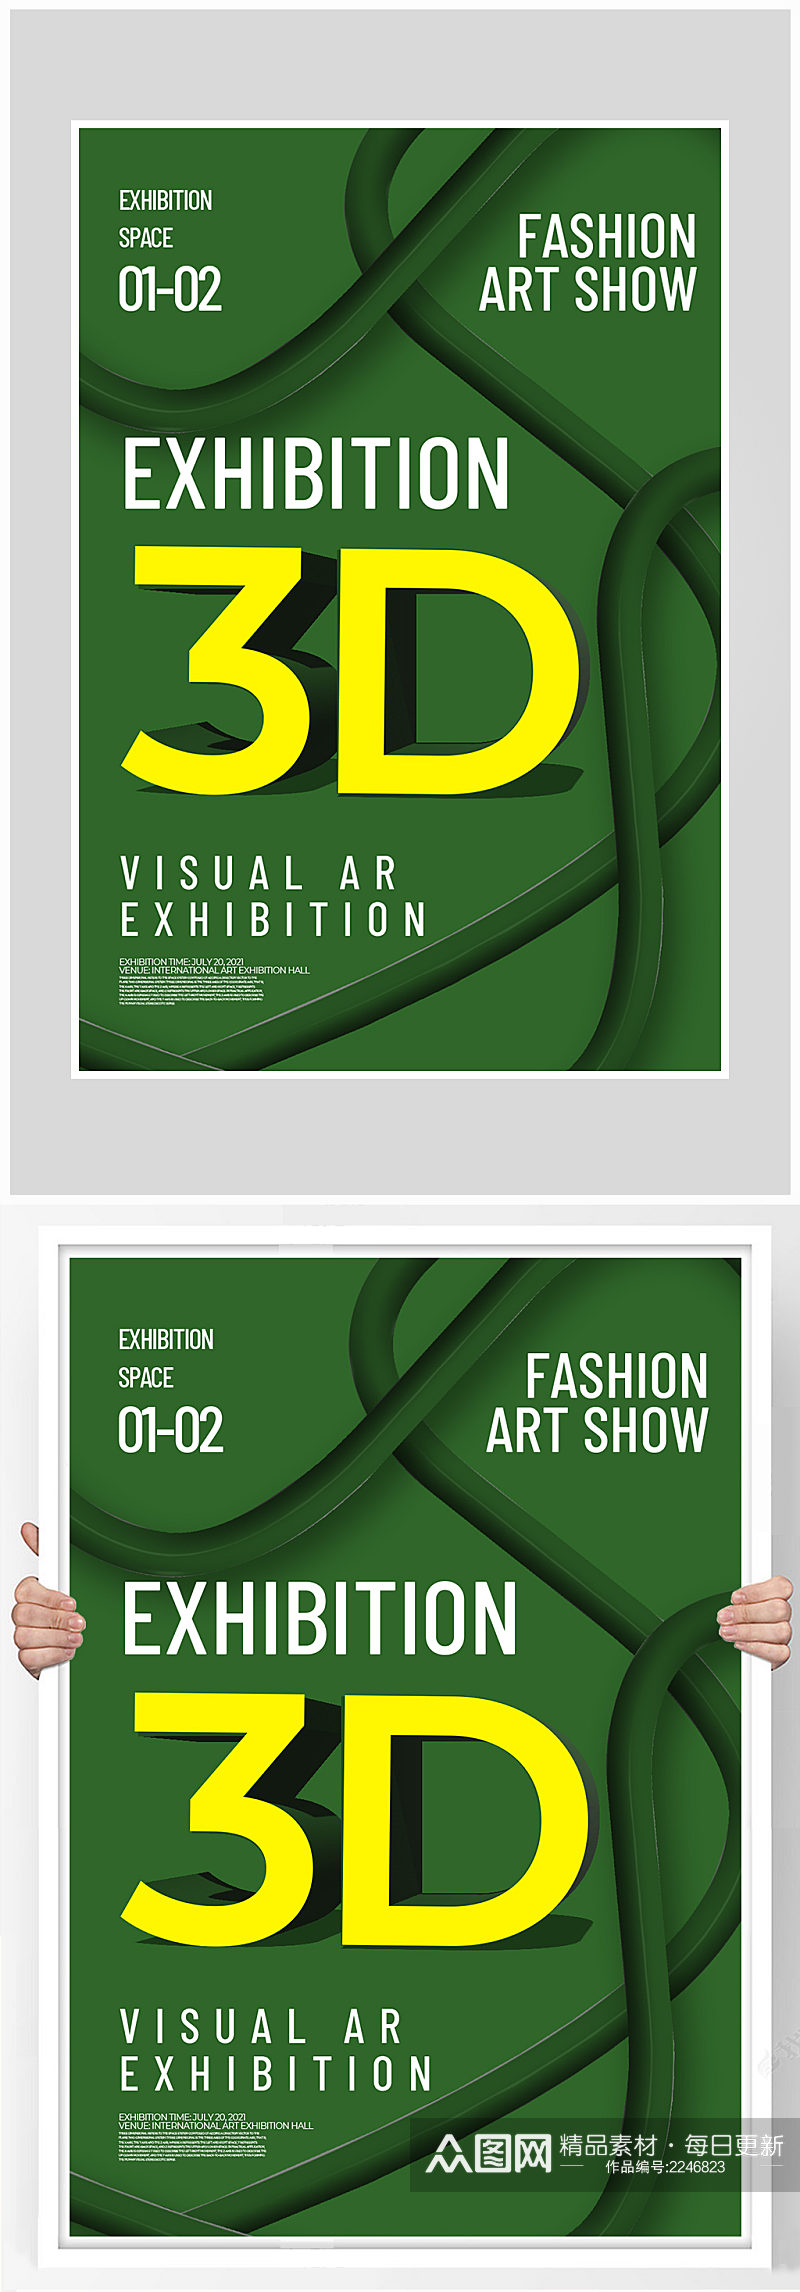 创意质感3D展览艺术海报设计素材